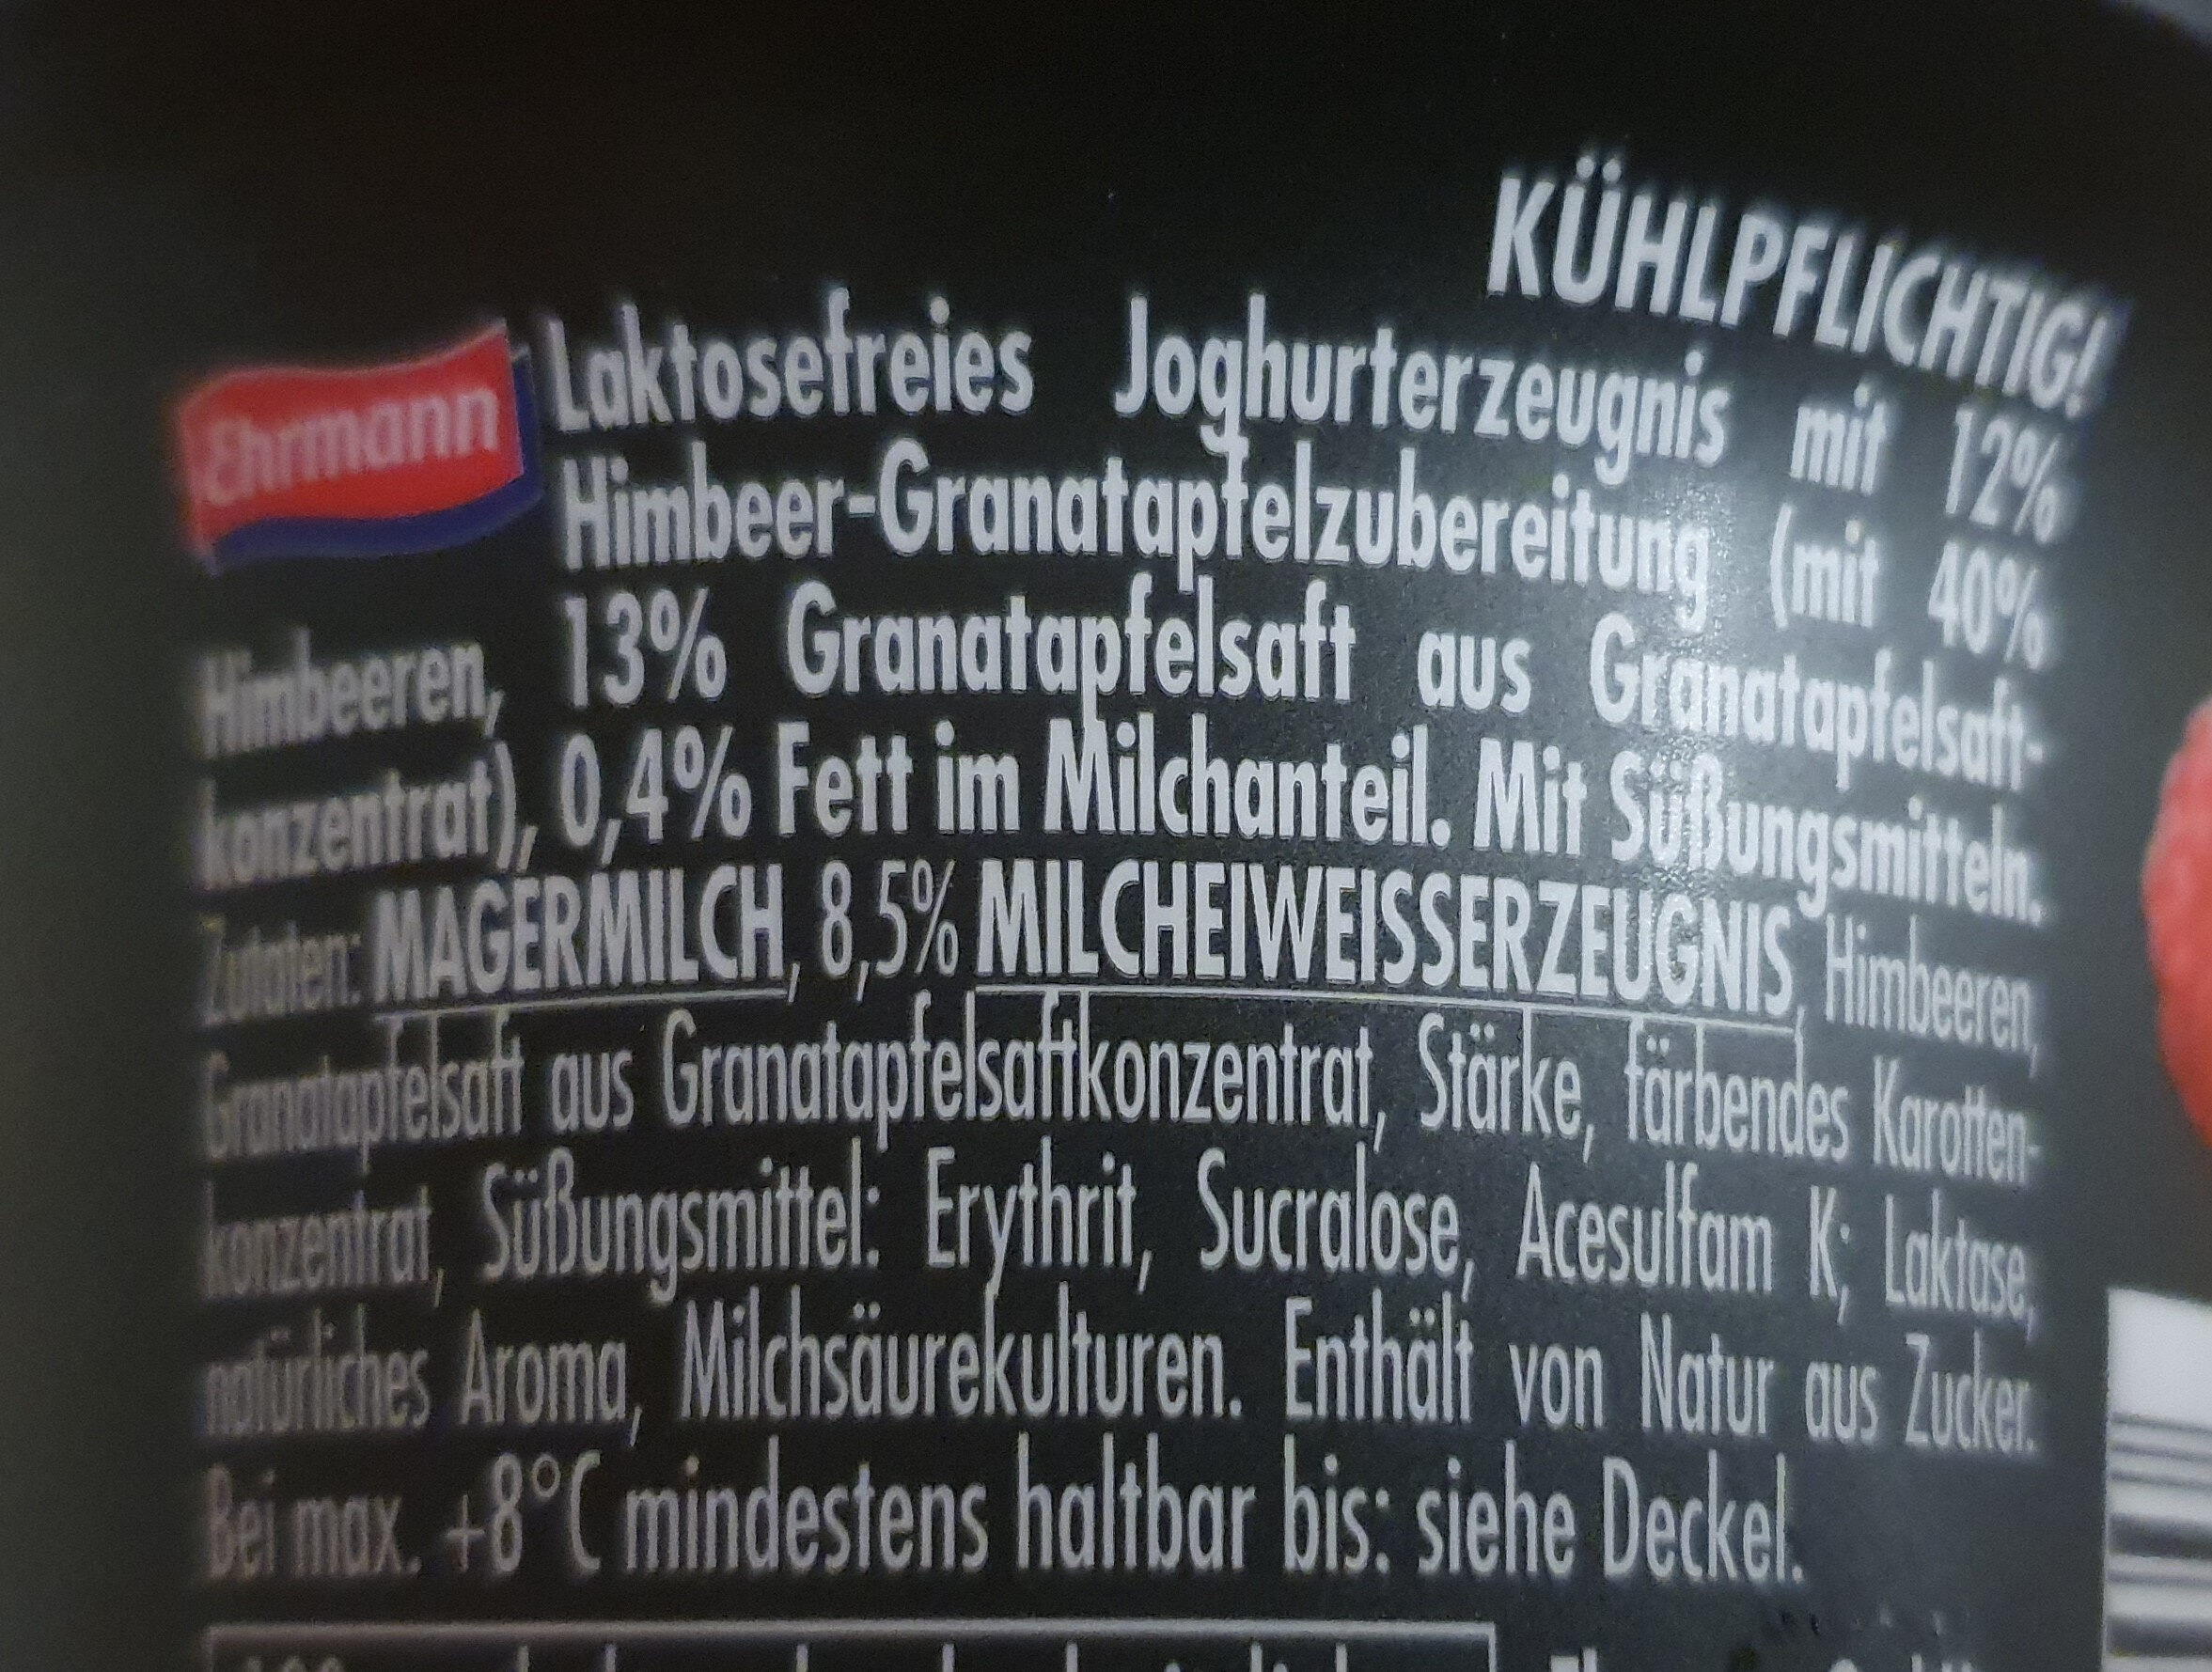 High Protein Joghurterzeugnis Himbeere Granatapfel - Ingredientes - de